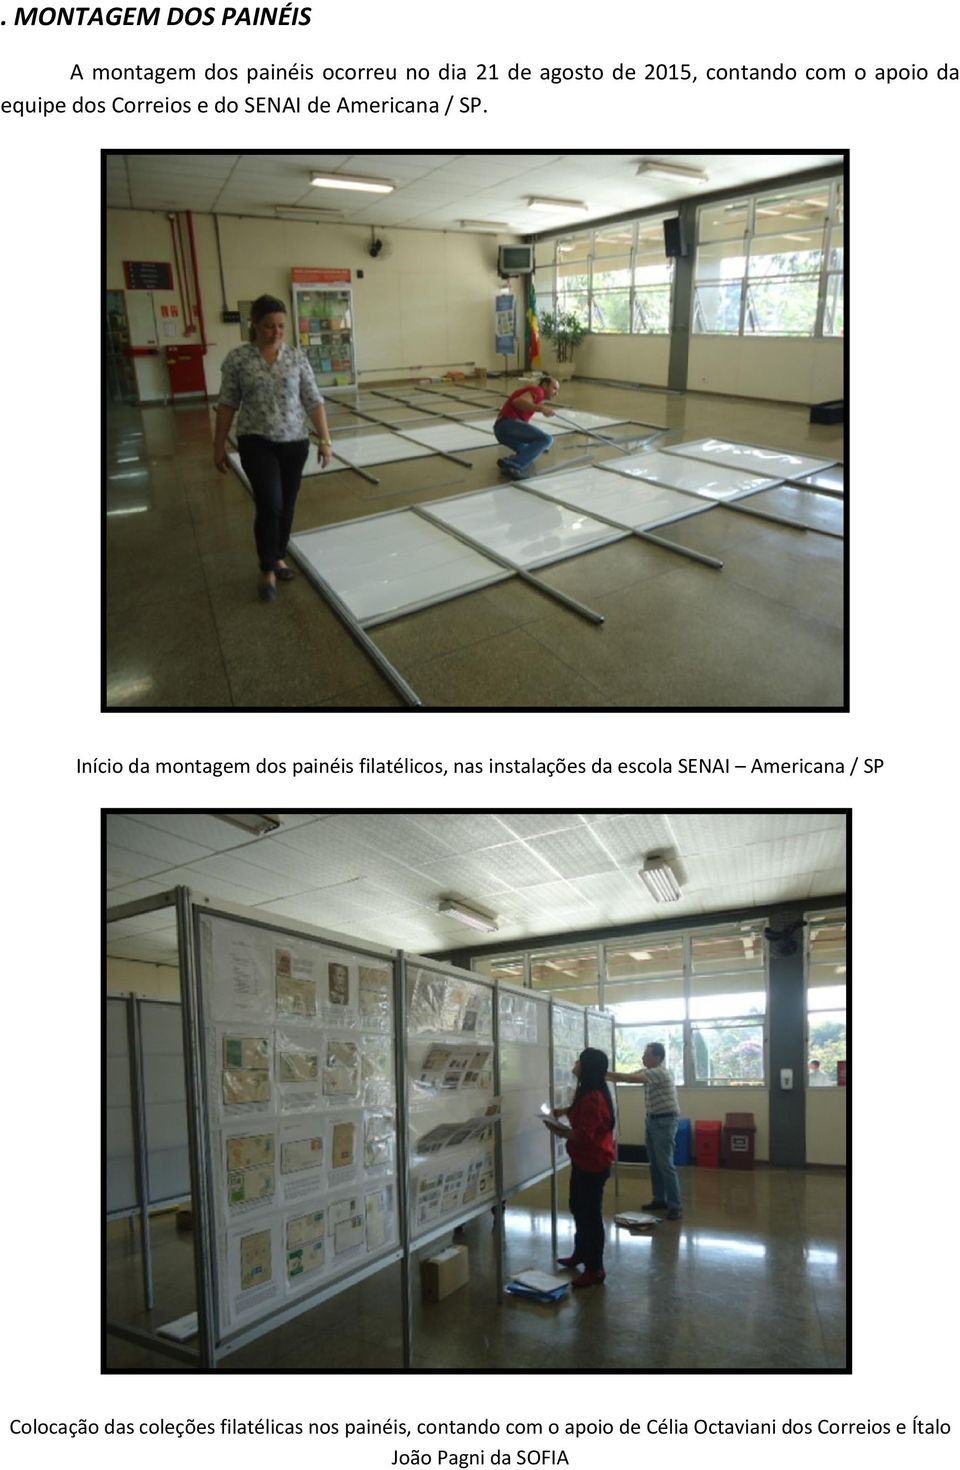 Início da montagem dos painéis filatélicos, nas instalações da escola SENAI Americana / SP